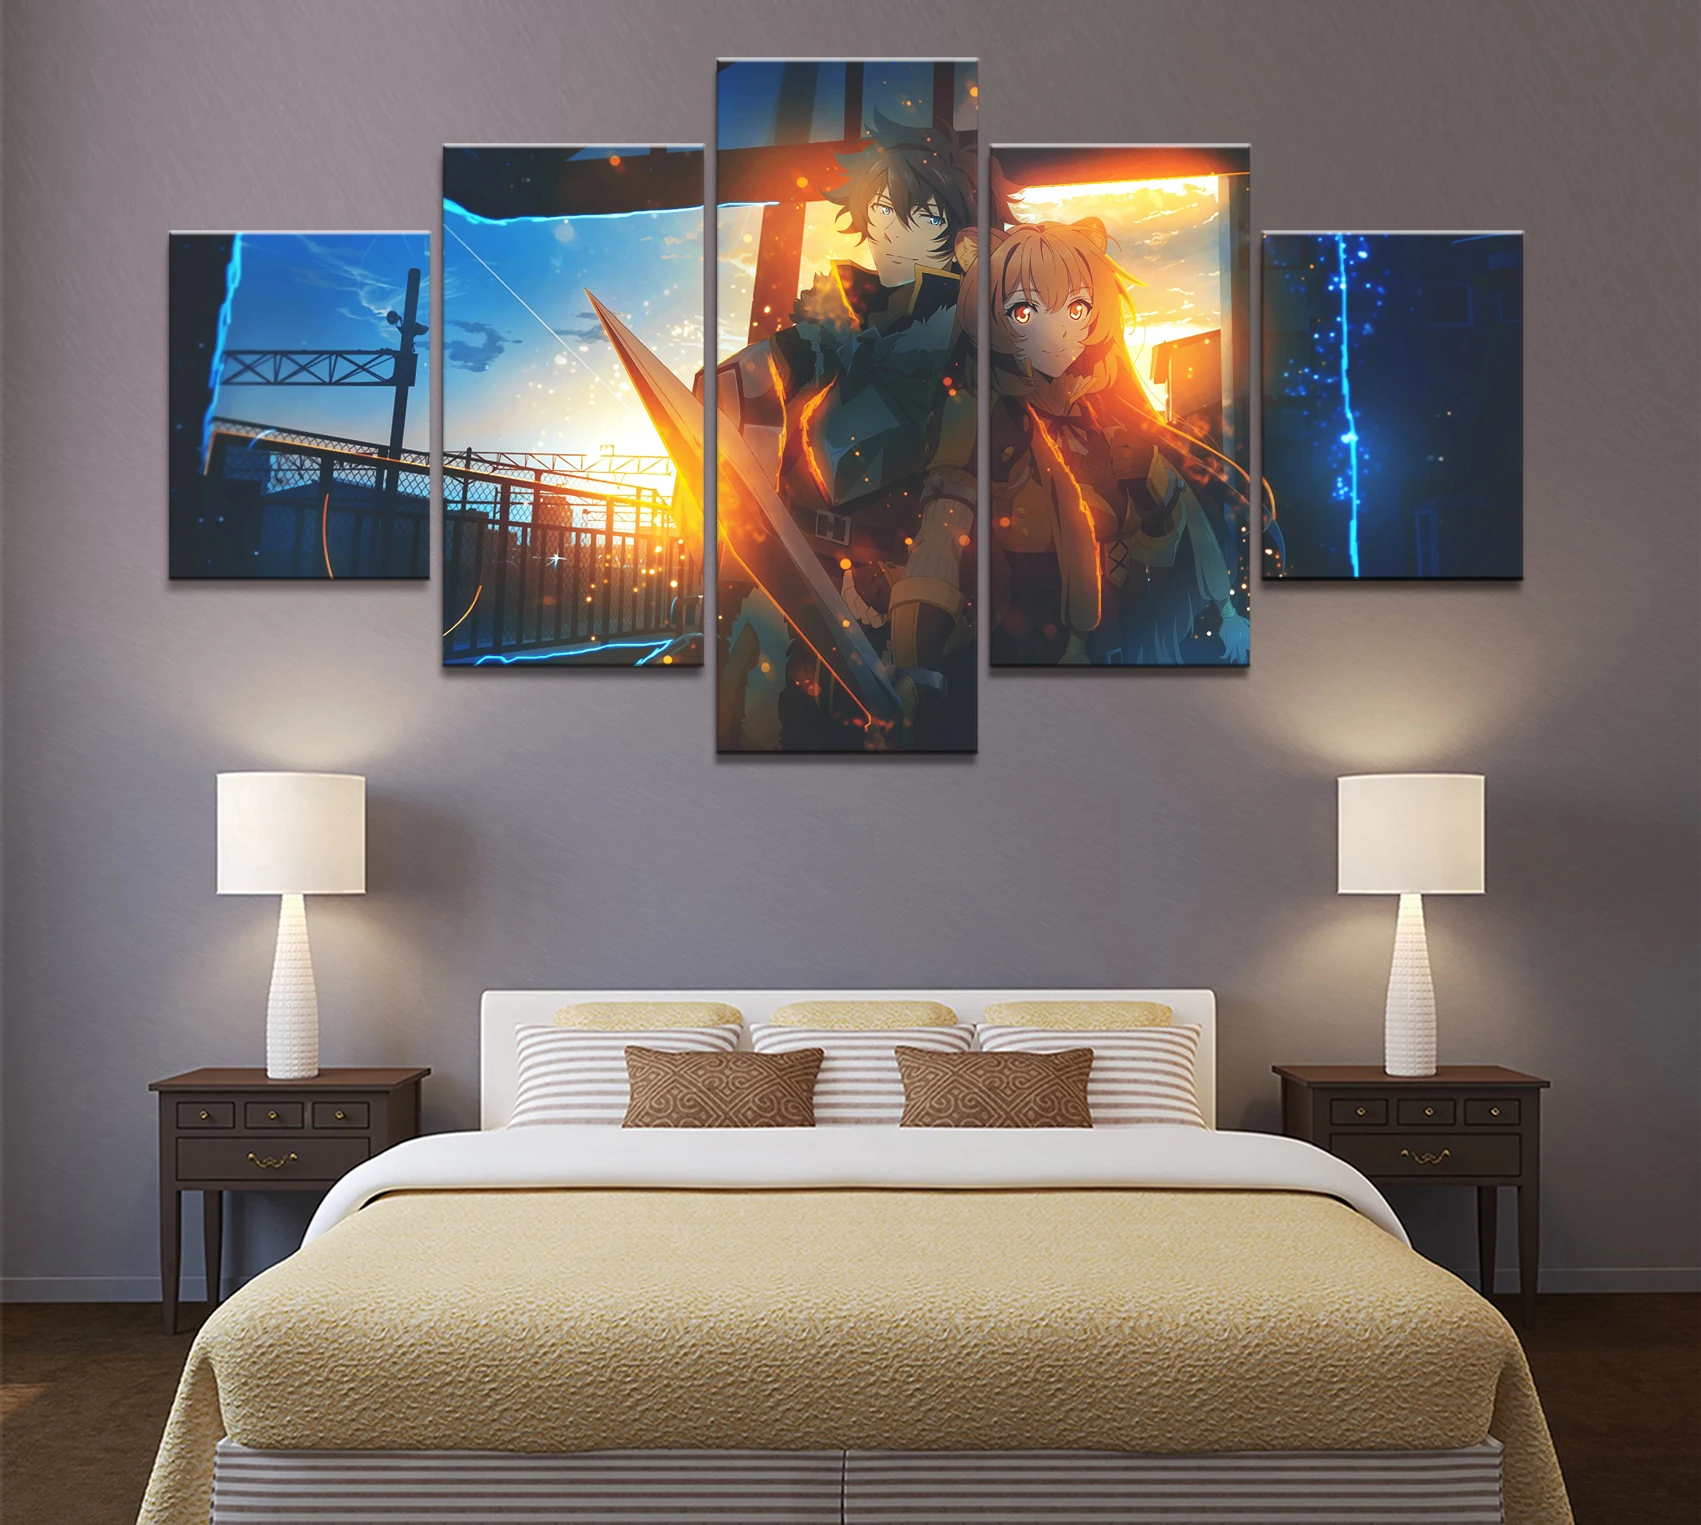 5 панель восстание щит герой трейлер аниме холст печатная живопись для гостиной Декор стены картина художественный плакат